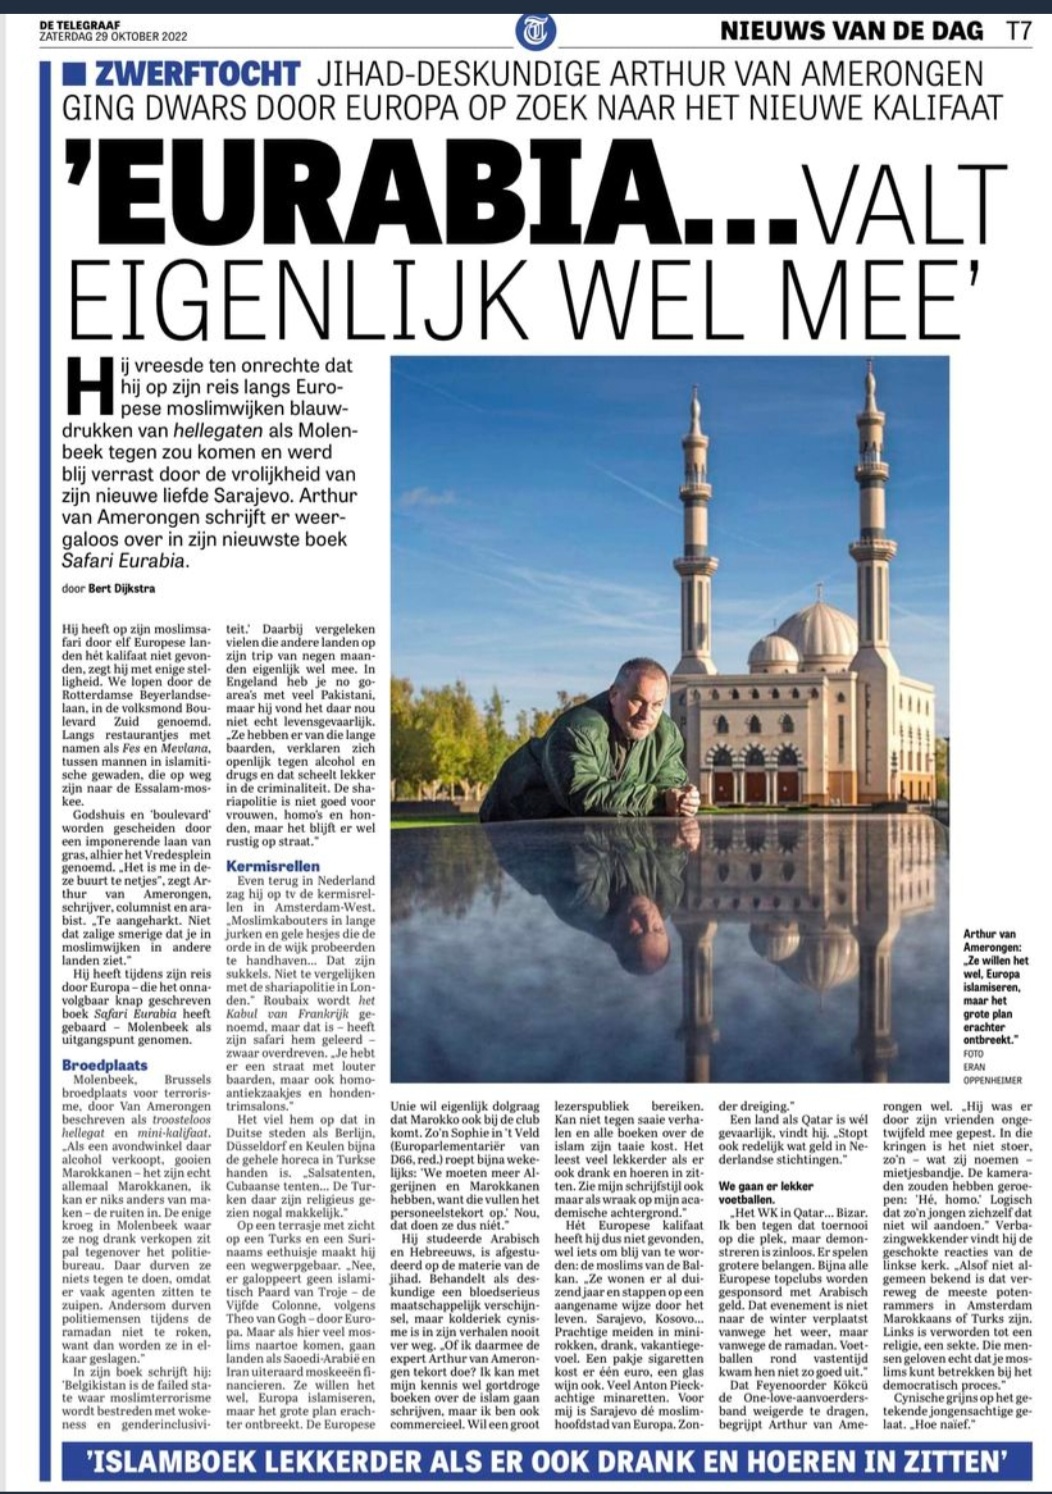 Interview Bert Dijkstra met Arthur van Amerongen in De Telegraaf